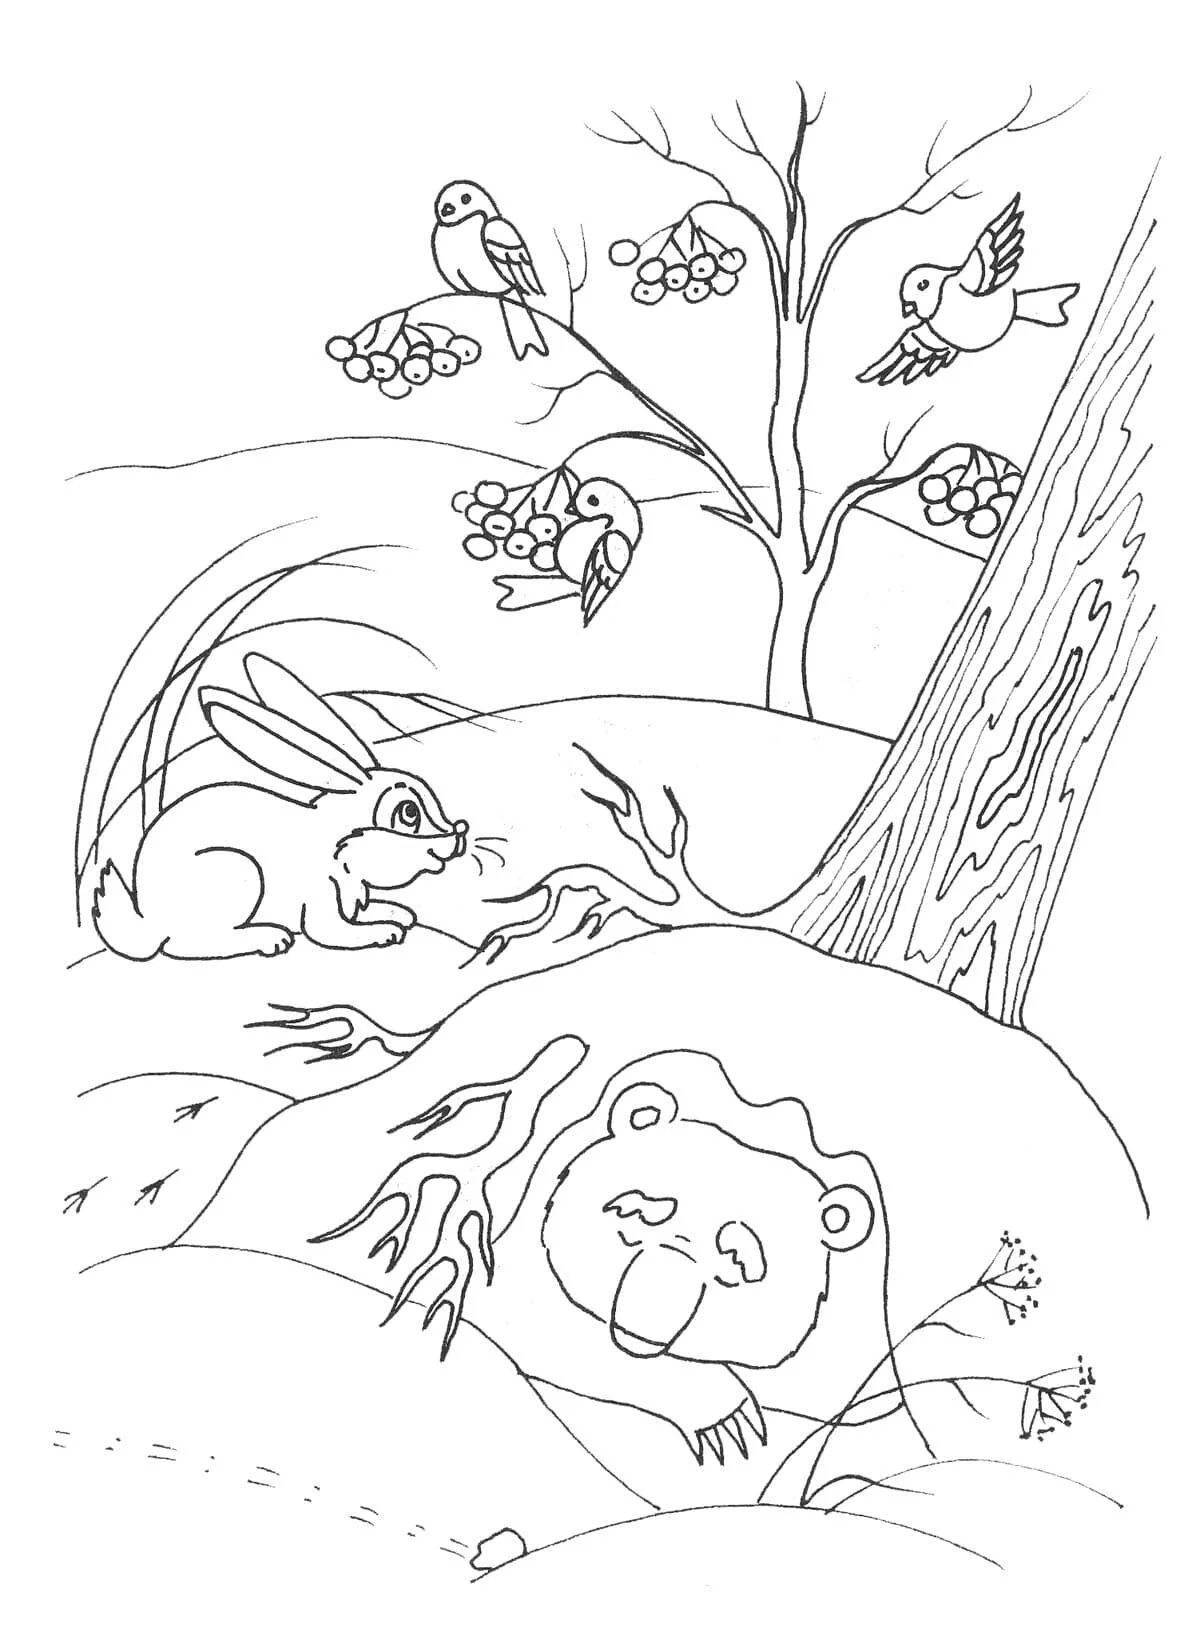 Милая раскраска спящий медведь в берлоге